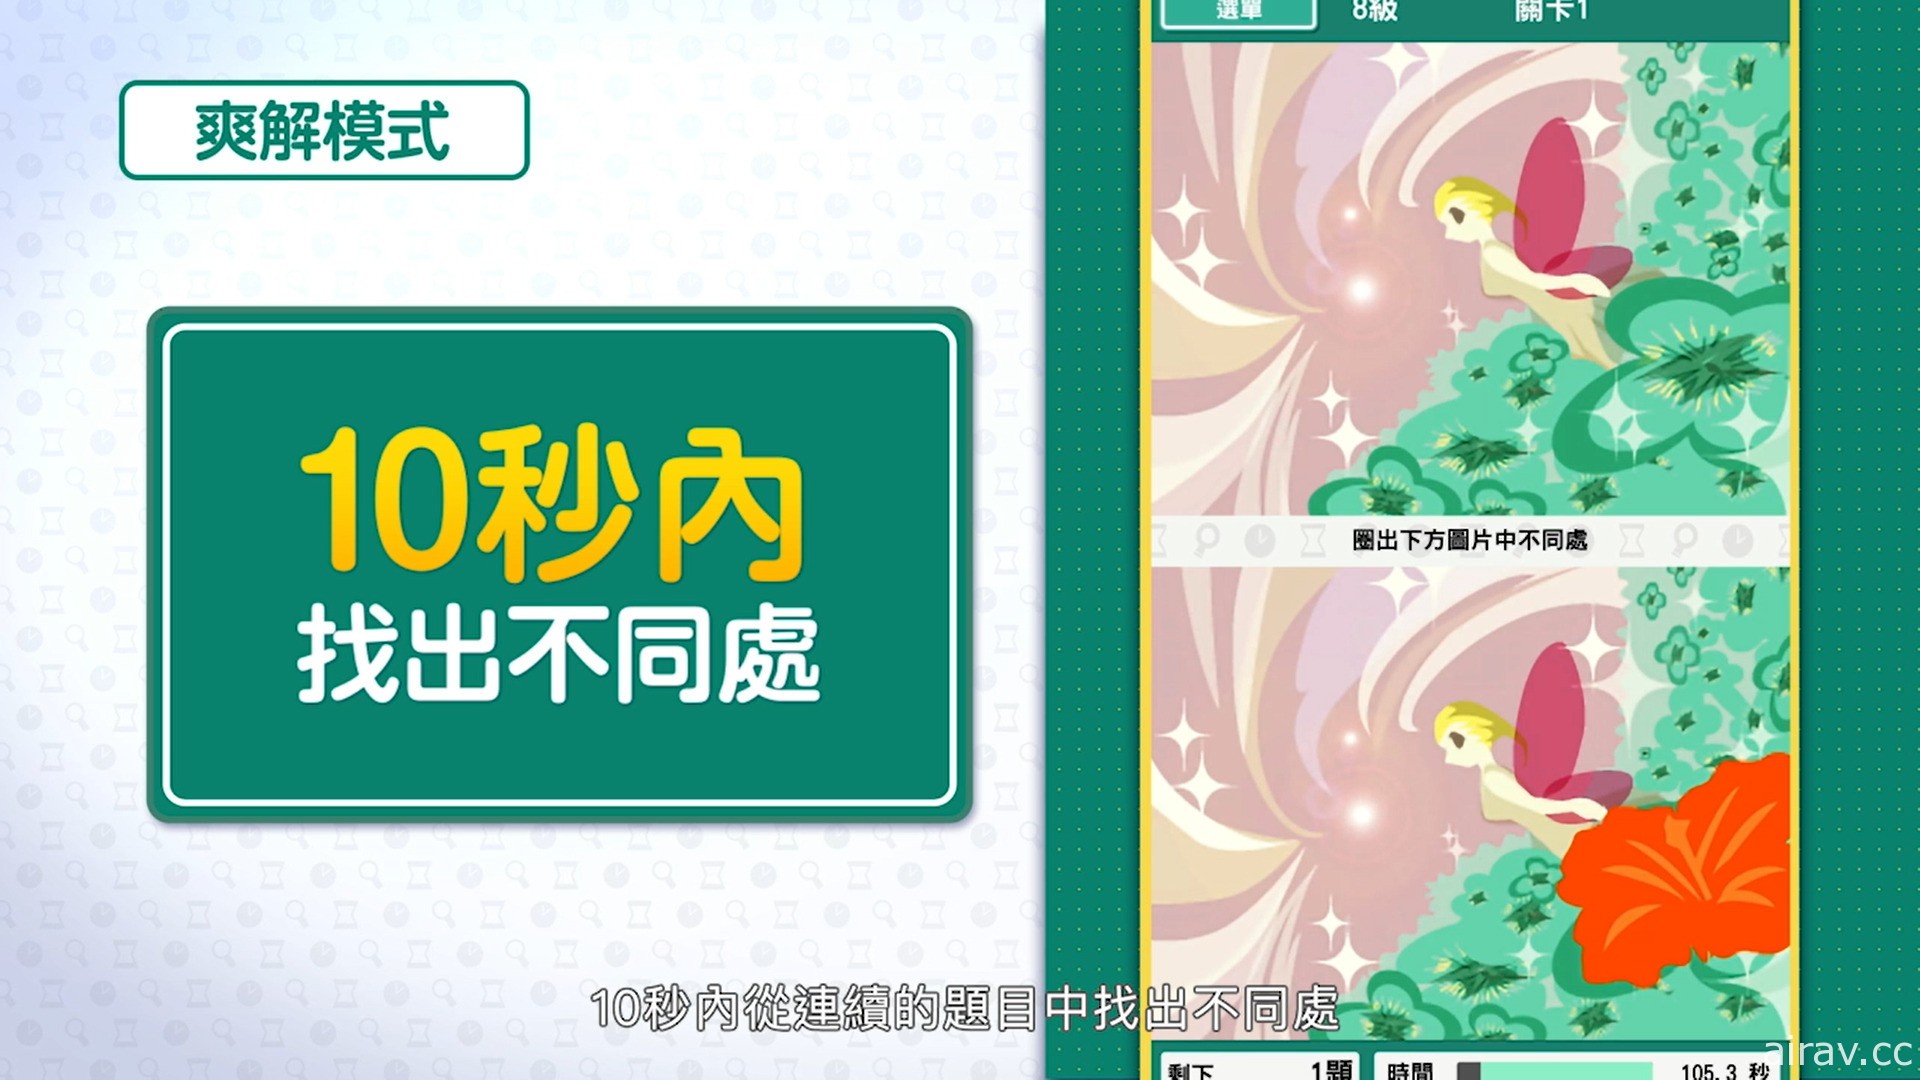 《-右脑达人- 找错纠察队 for Nintendo Switch》中文数位版 11 月 25 日发售